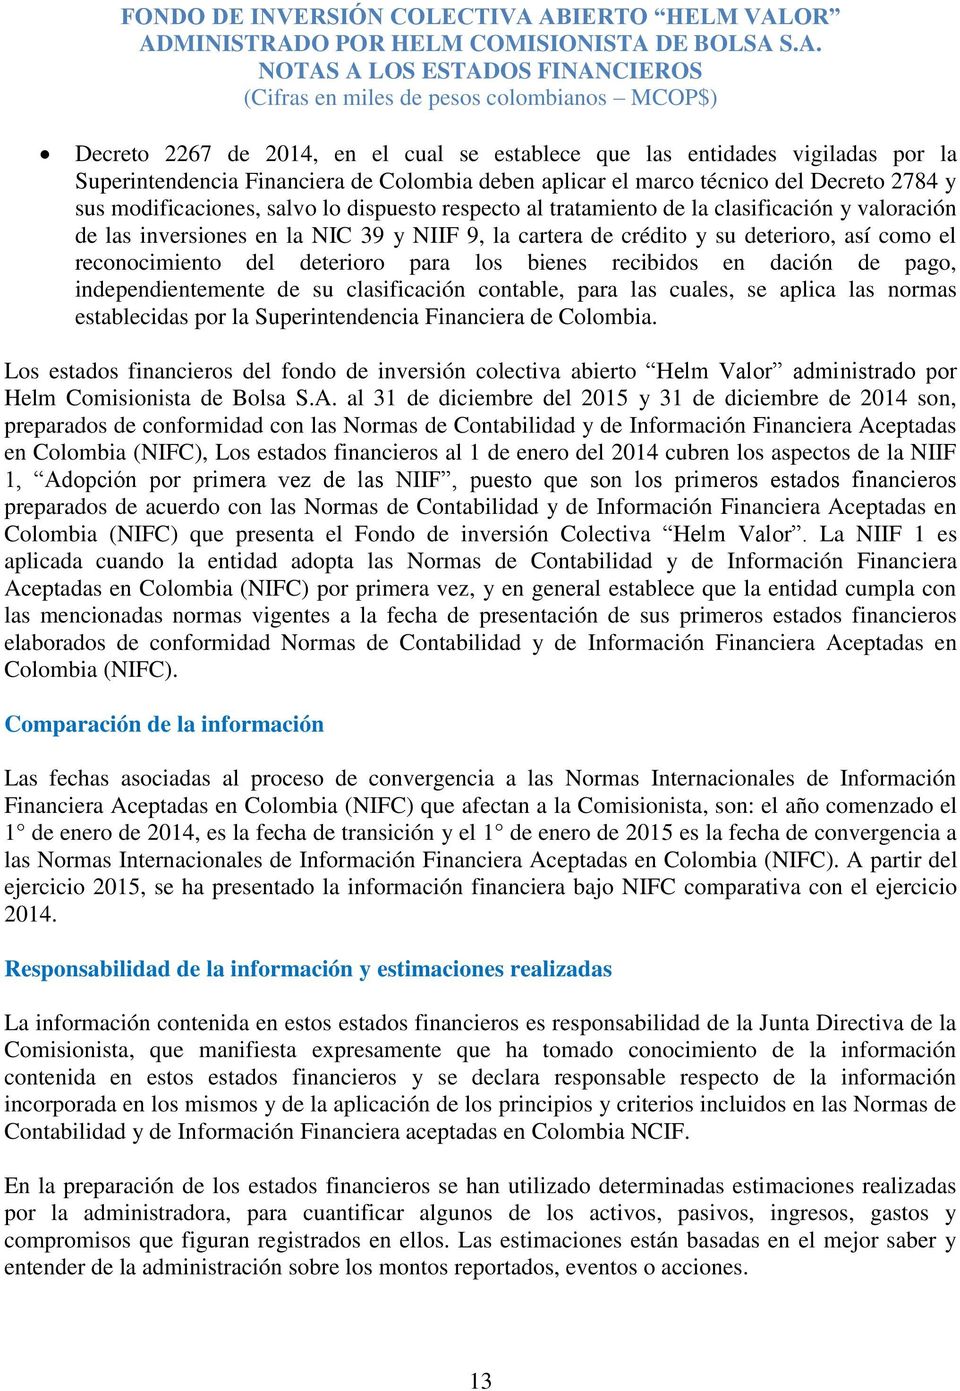 bienes recibidos en dación de pago, independientemente de su clasificación contable, para las cuales, se aplica las normas establecidas por la Superintendencia Financiera de Colombia.